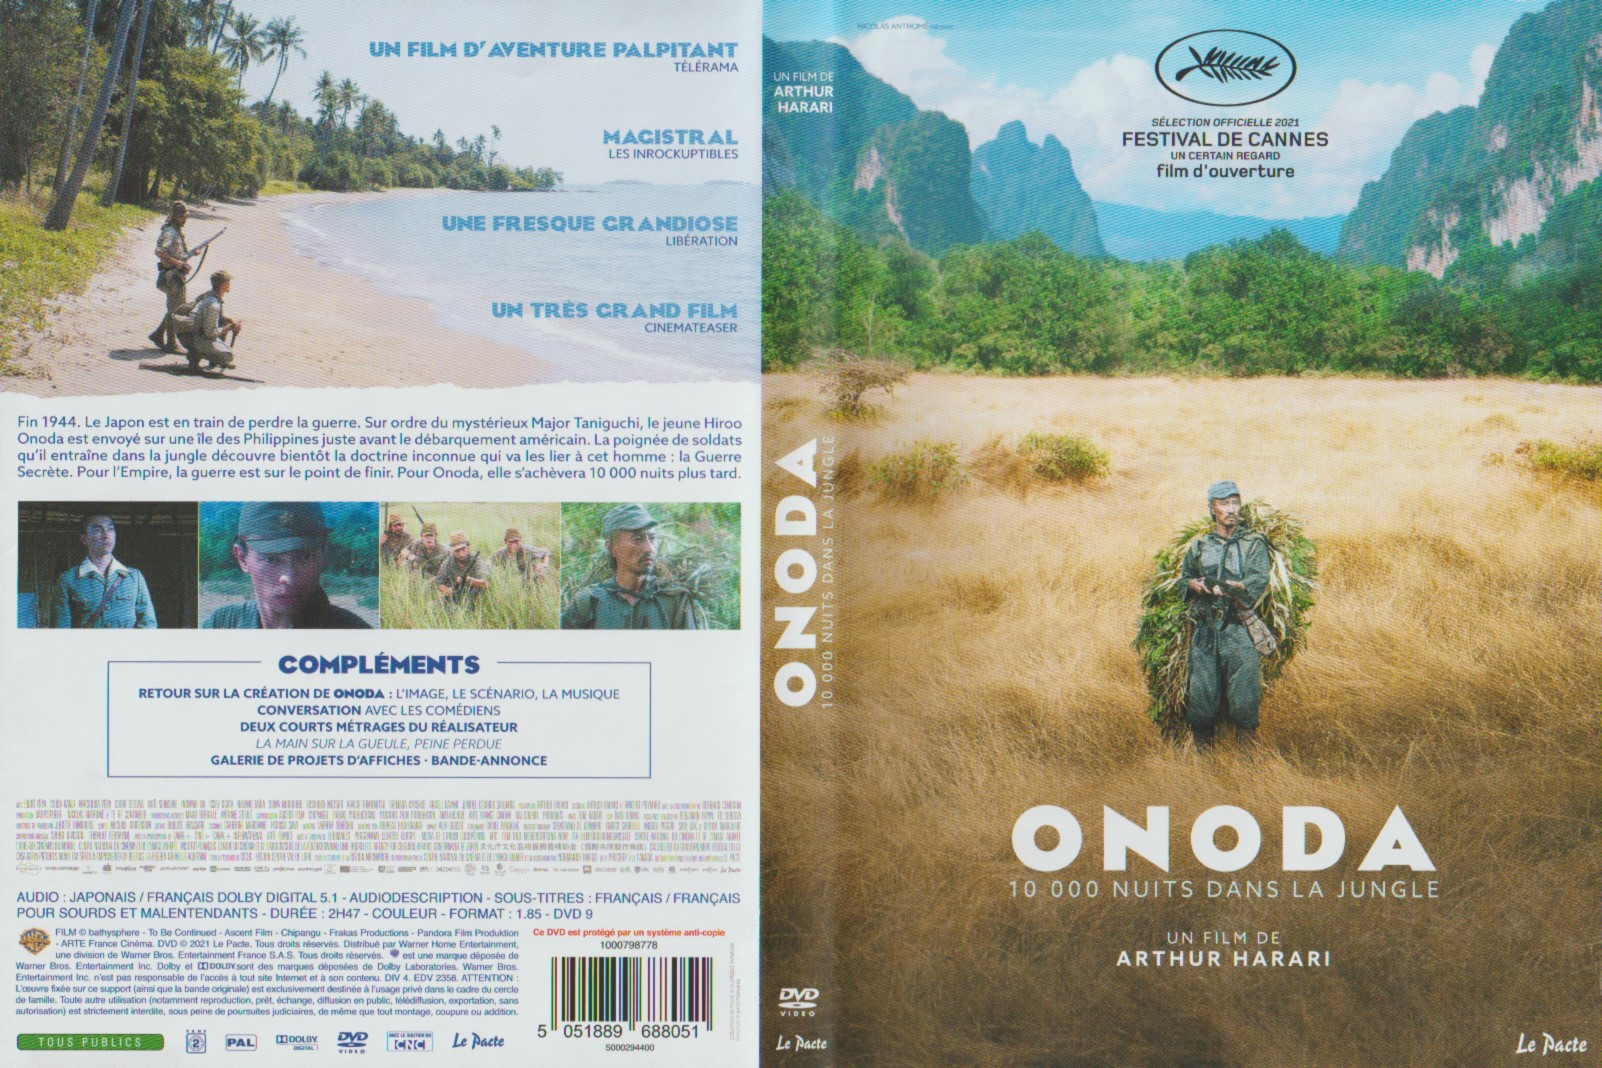 Jaquette DVD Onoda 10 000 nuits dans la jungle